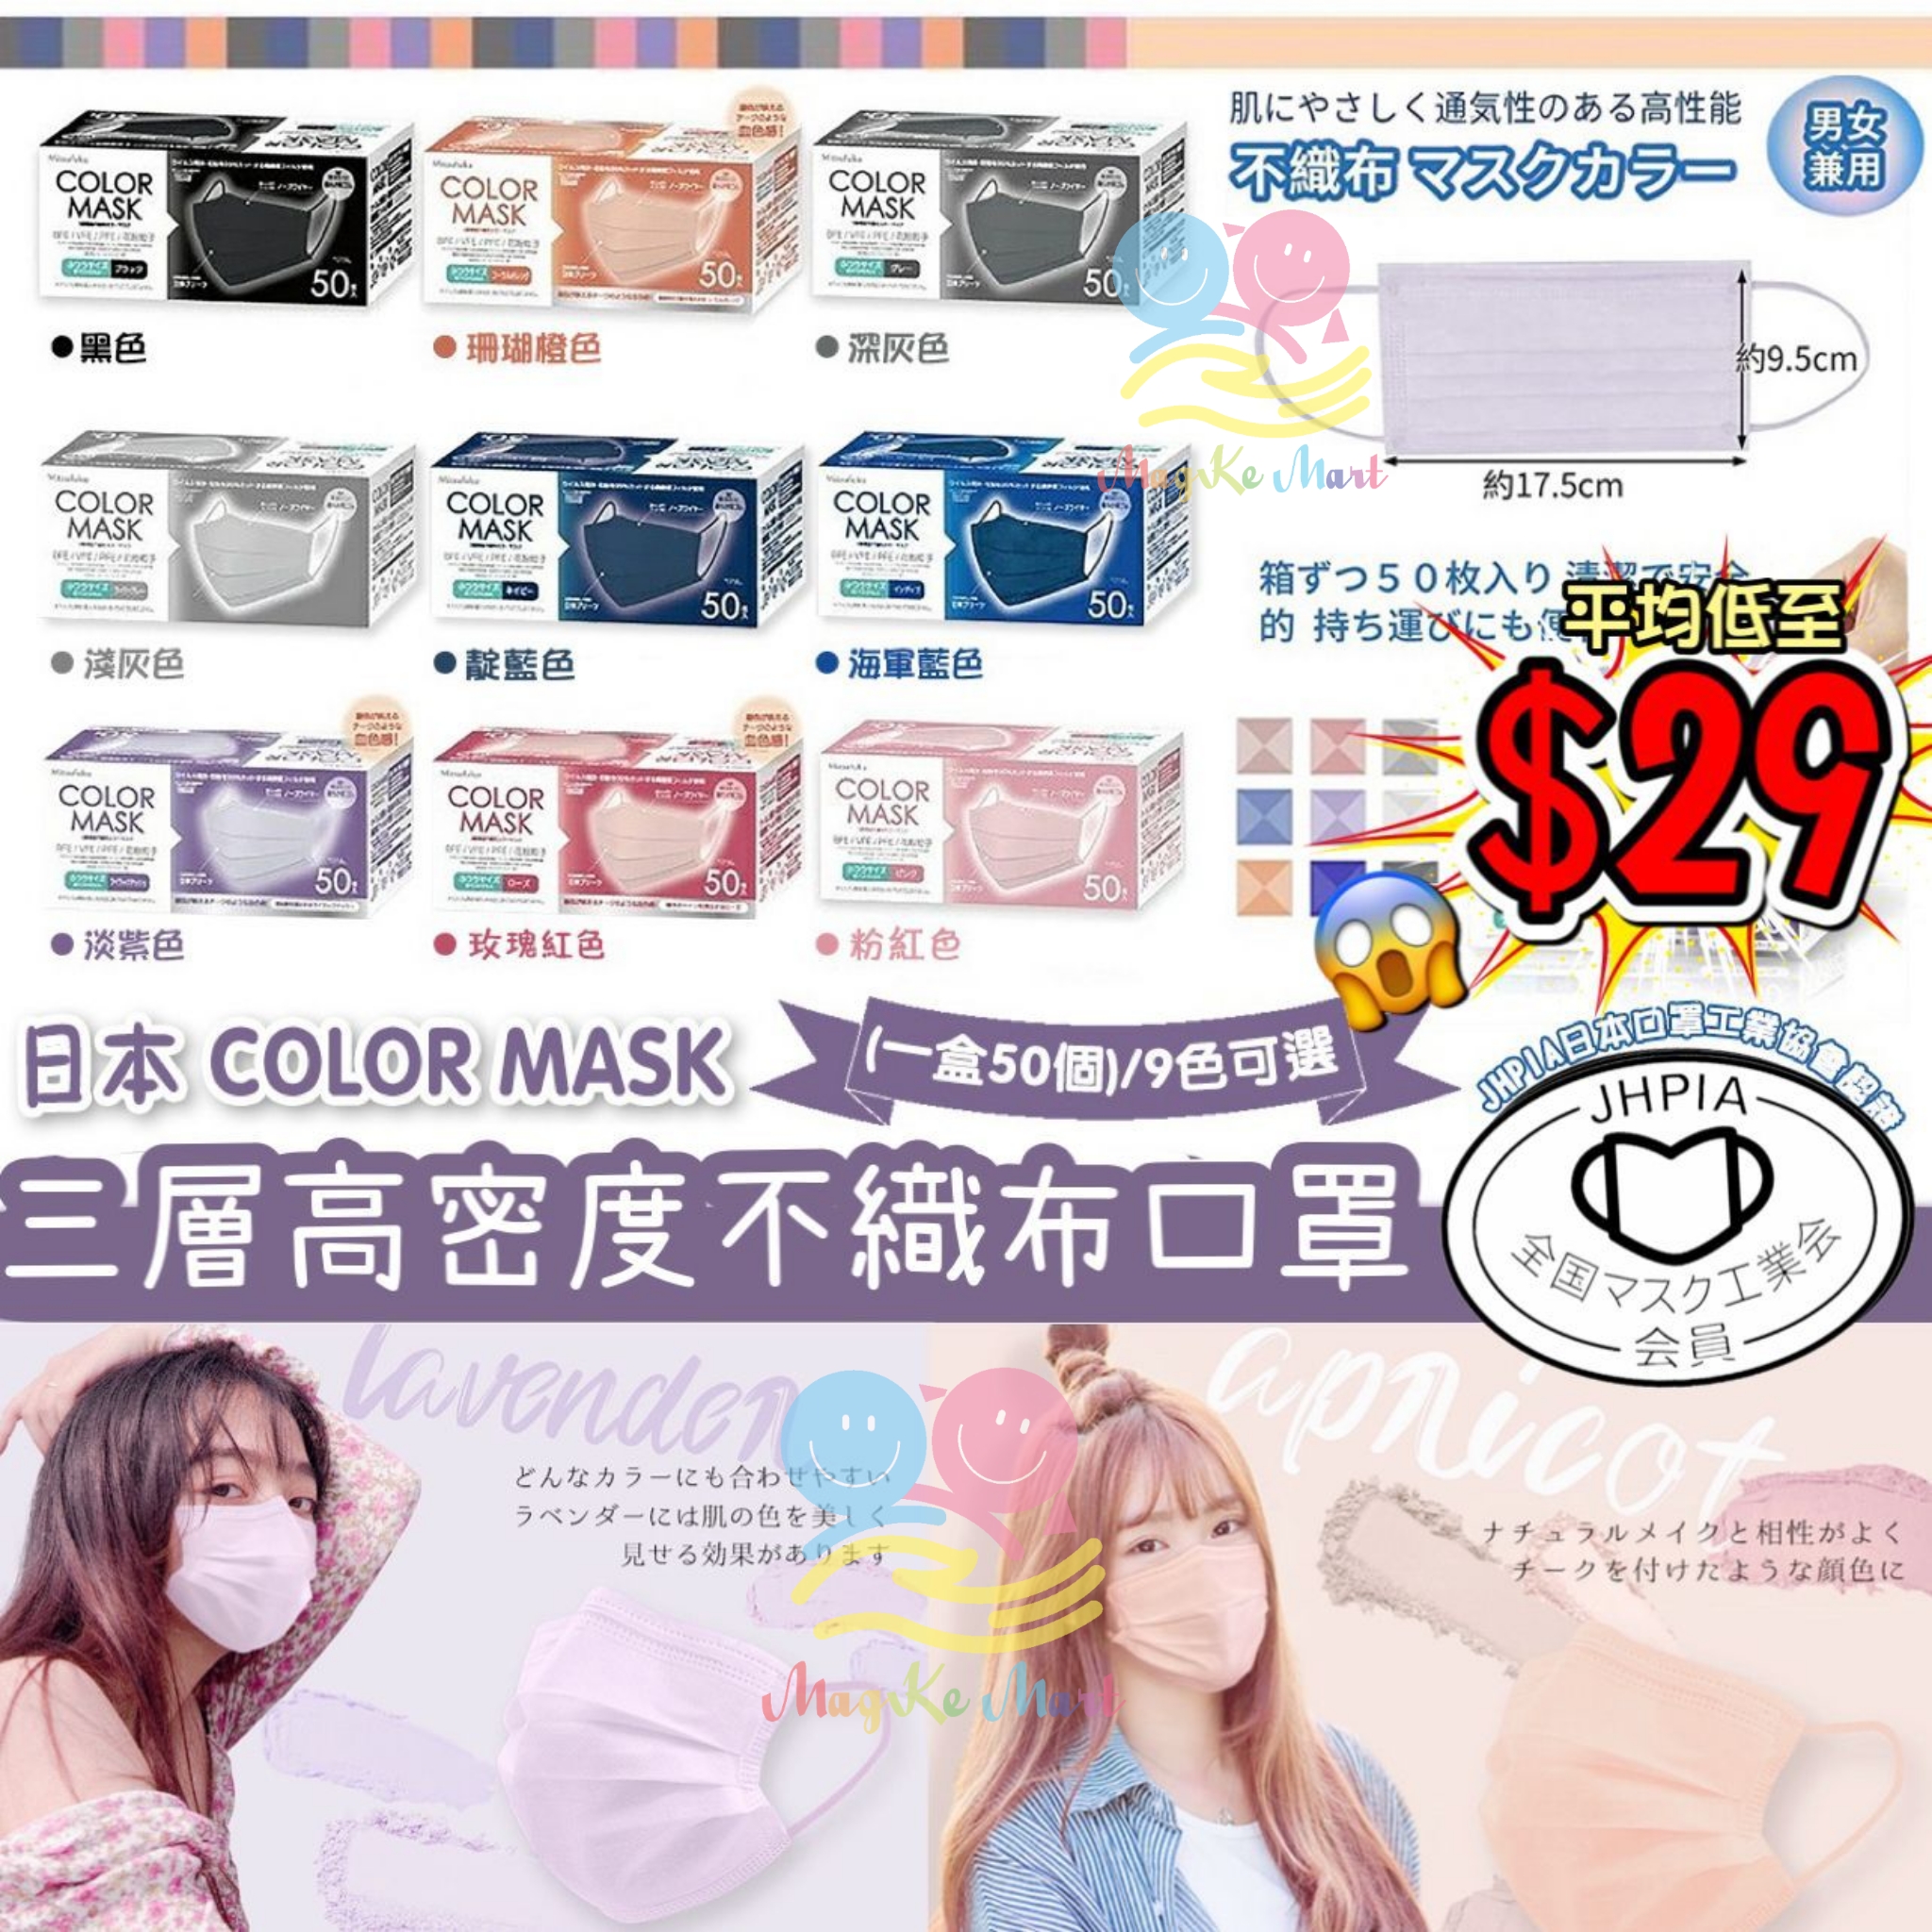 日本 COLOR MASK 3層高密度不織布口罩系列(1盒50個)(非獨立包裝) (I) 粉紅色